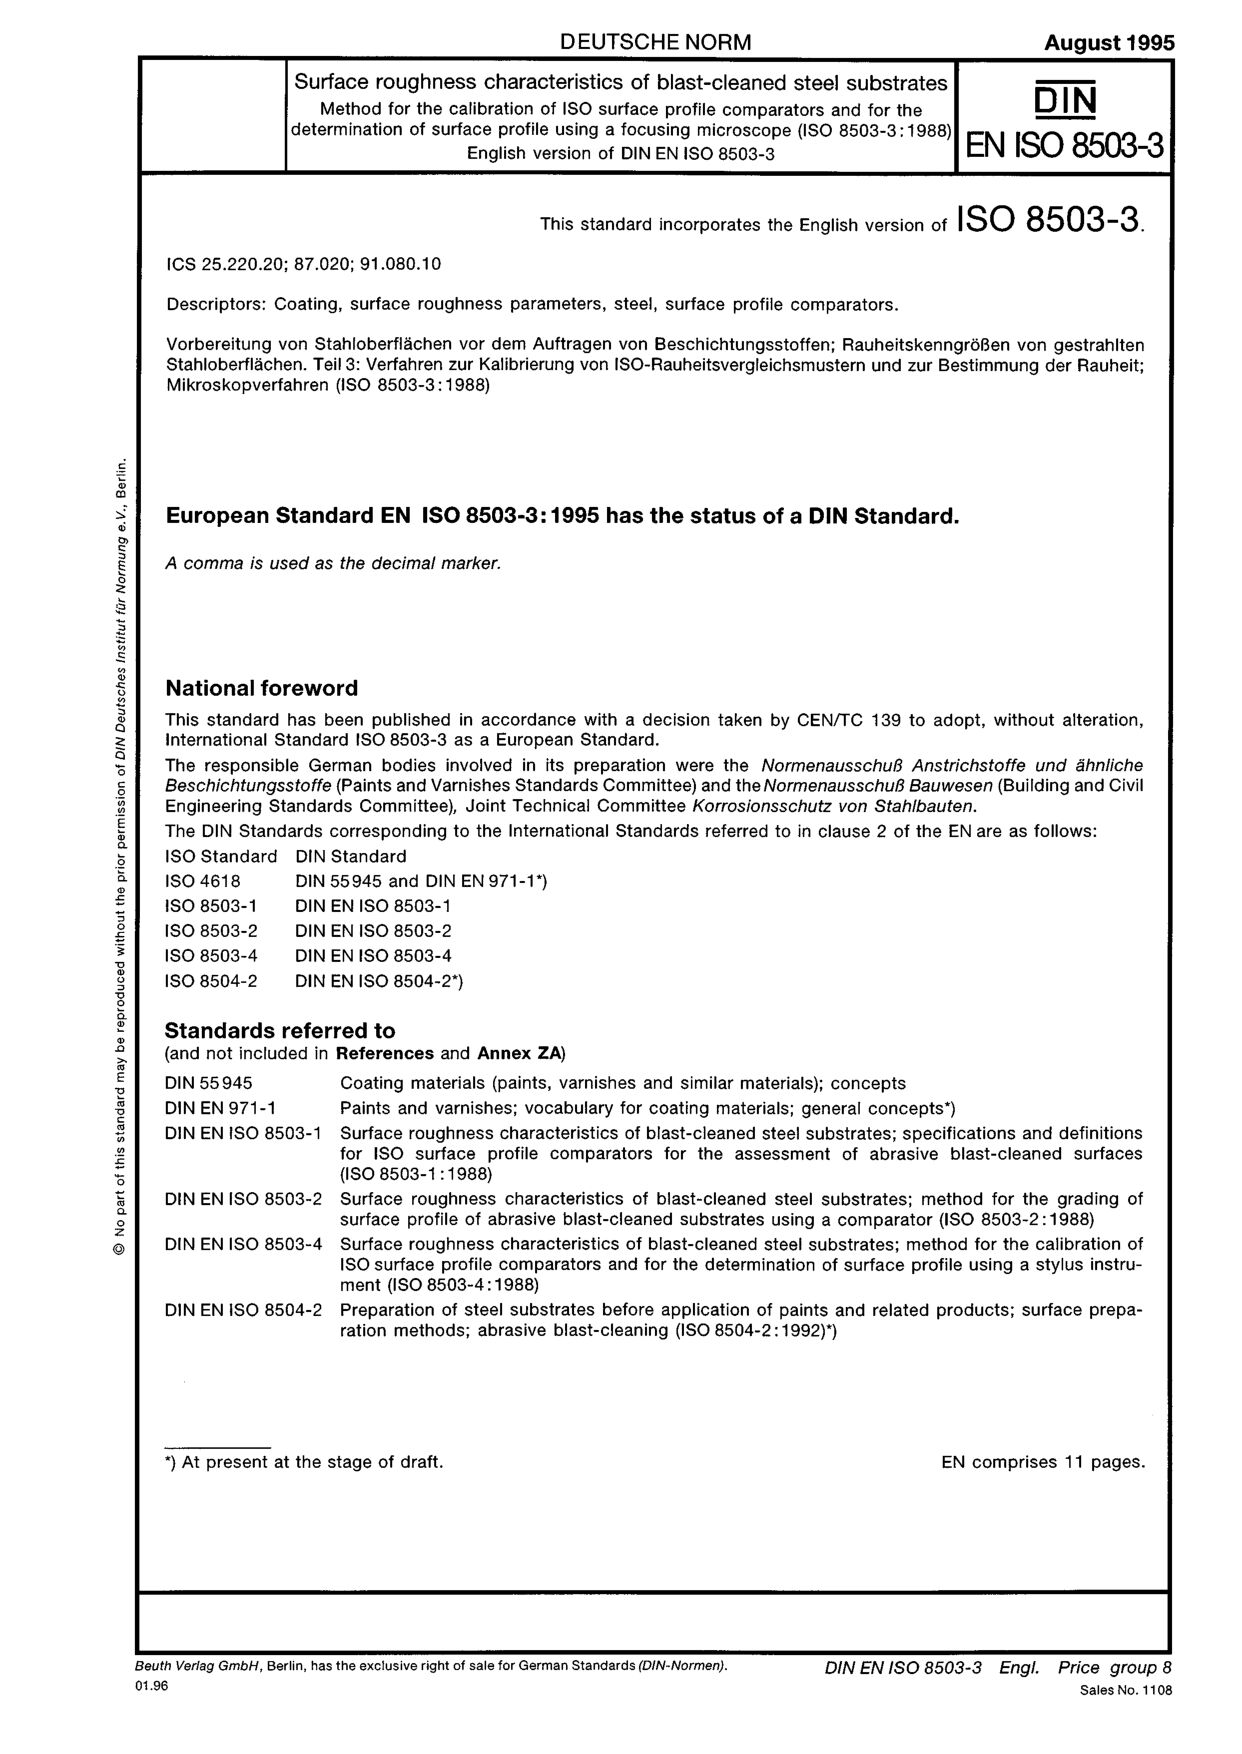 DIN EN ISO 8503-3:1995